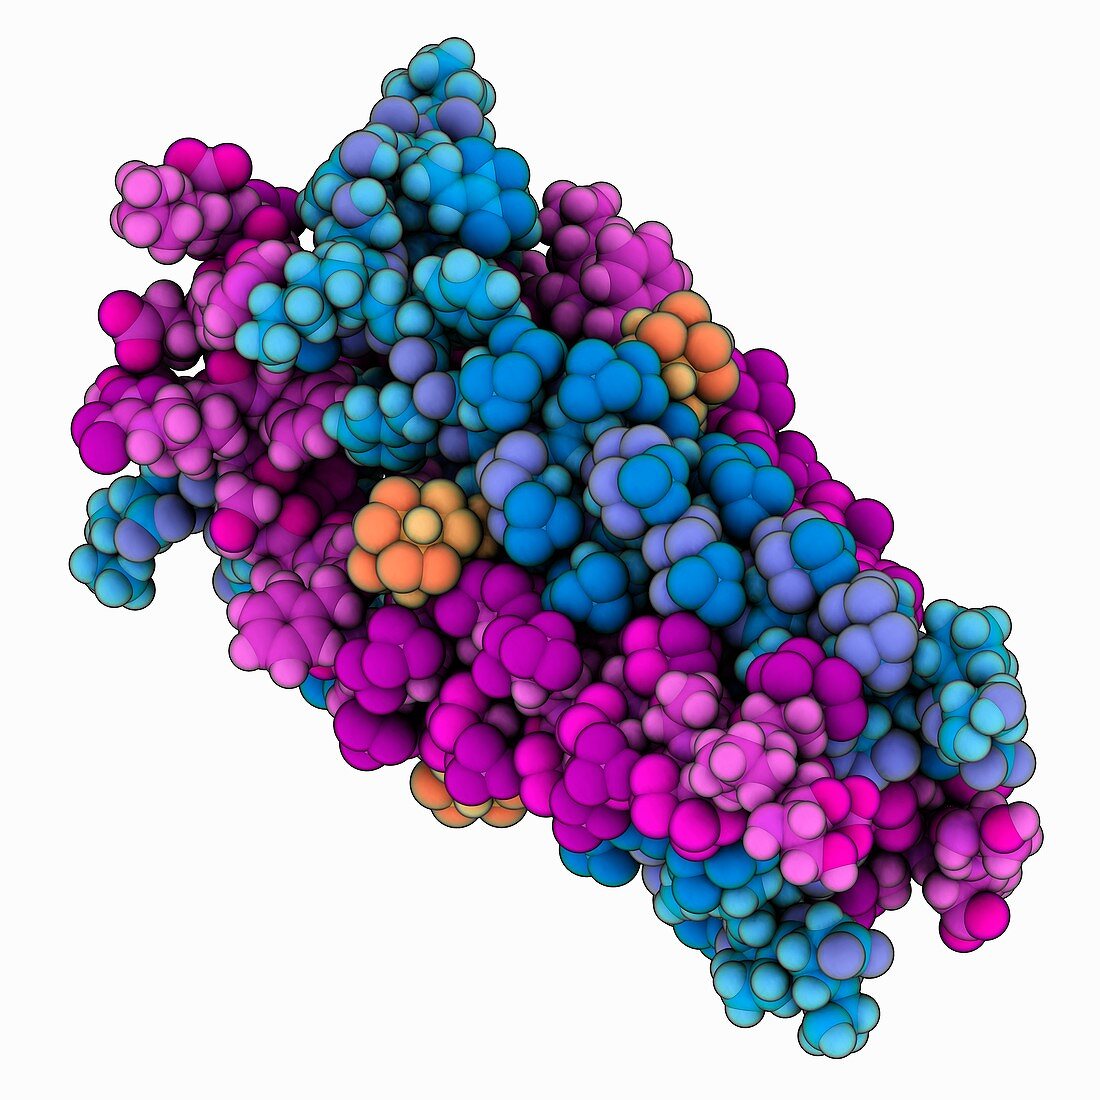 Influenza A proton channel complex